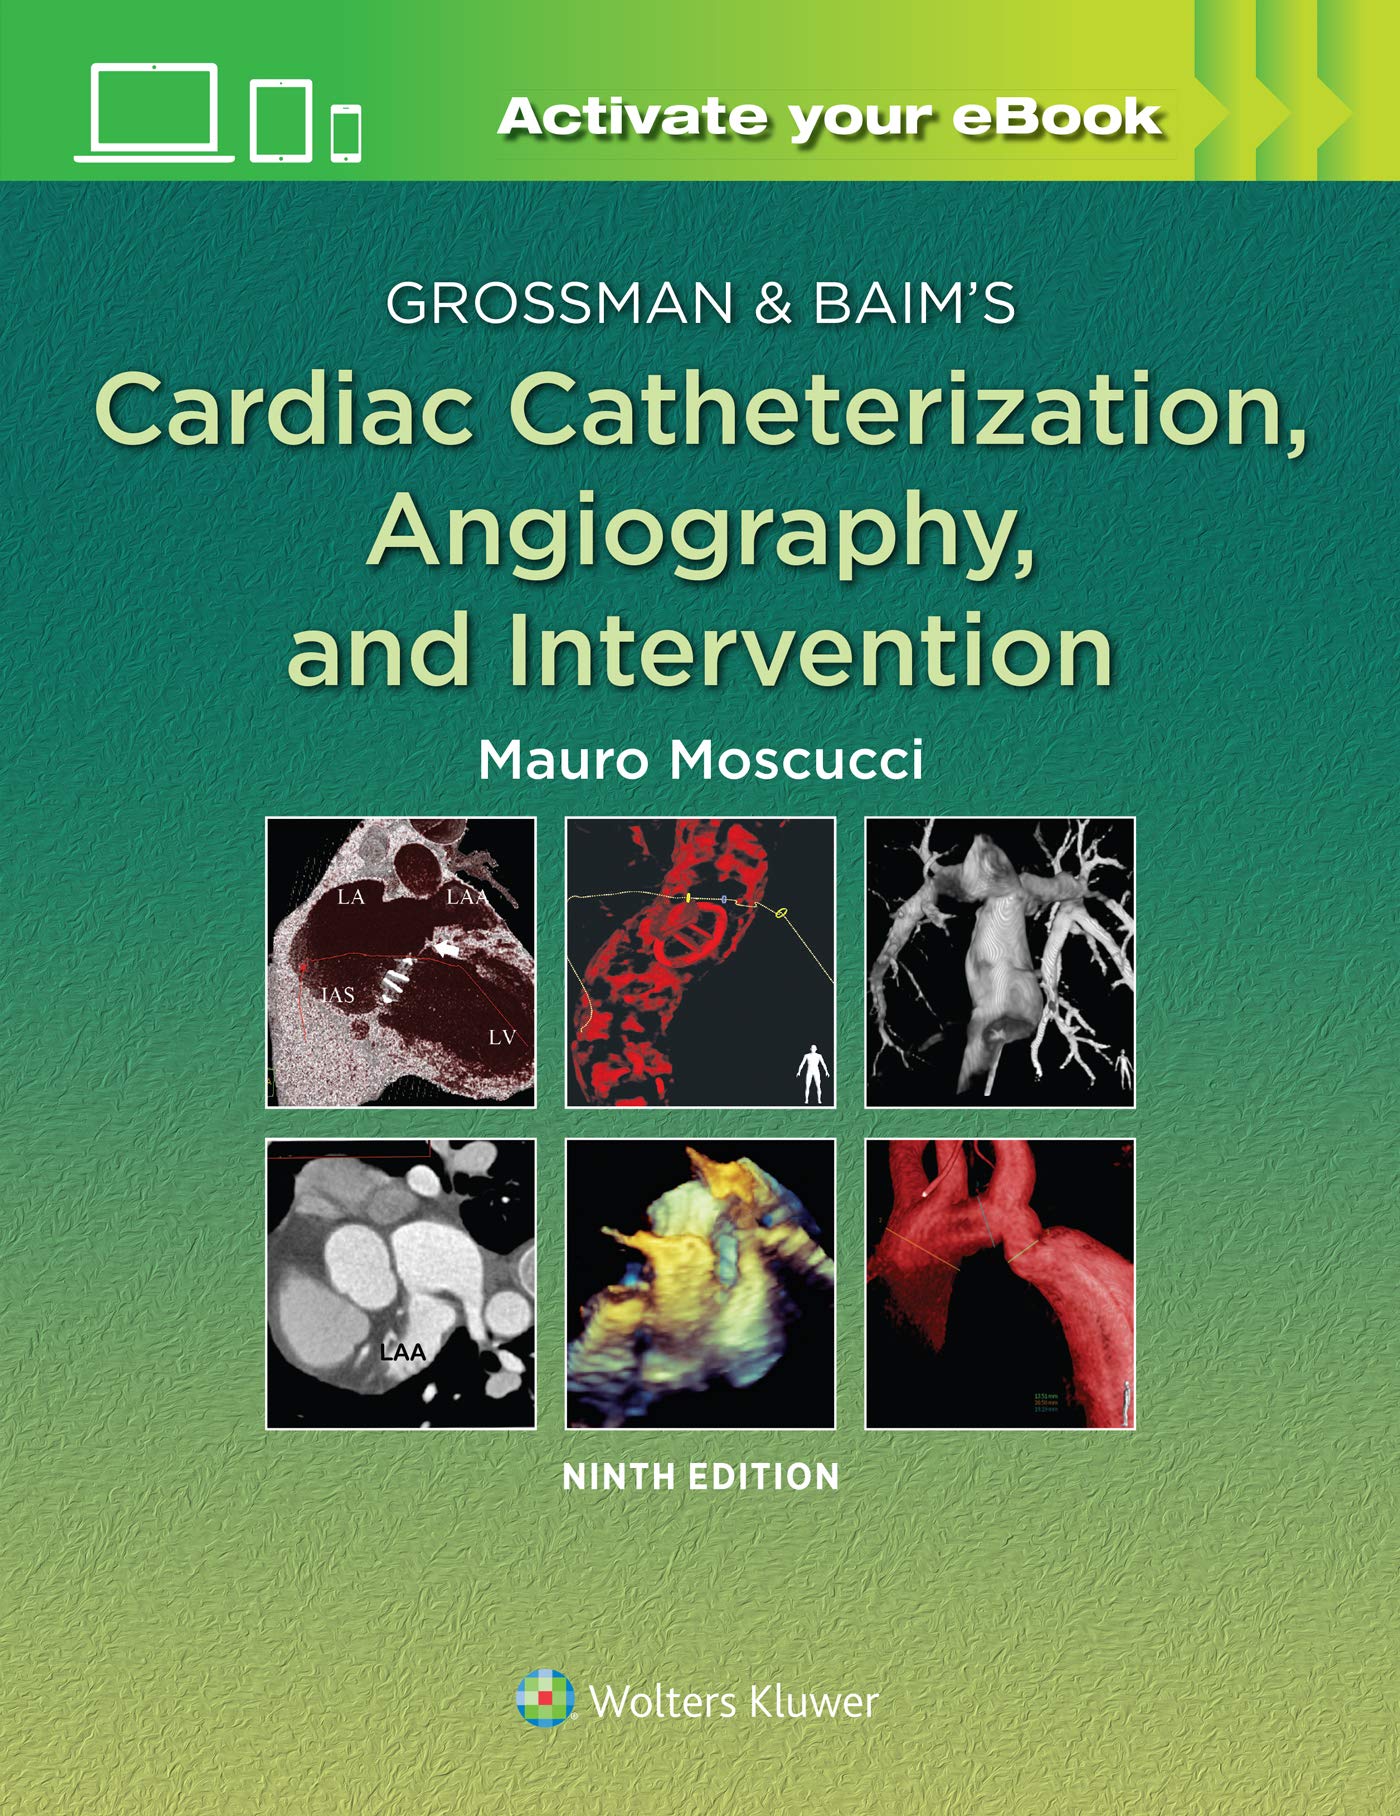 grossman-baims-cardiac-catheterization-angiography-and-intervention-eight-edition